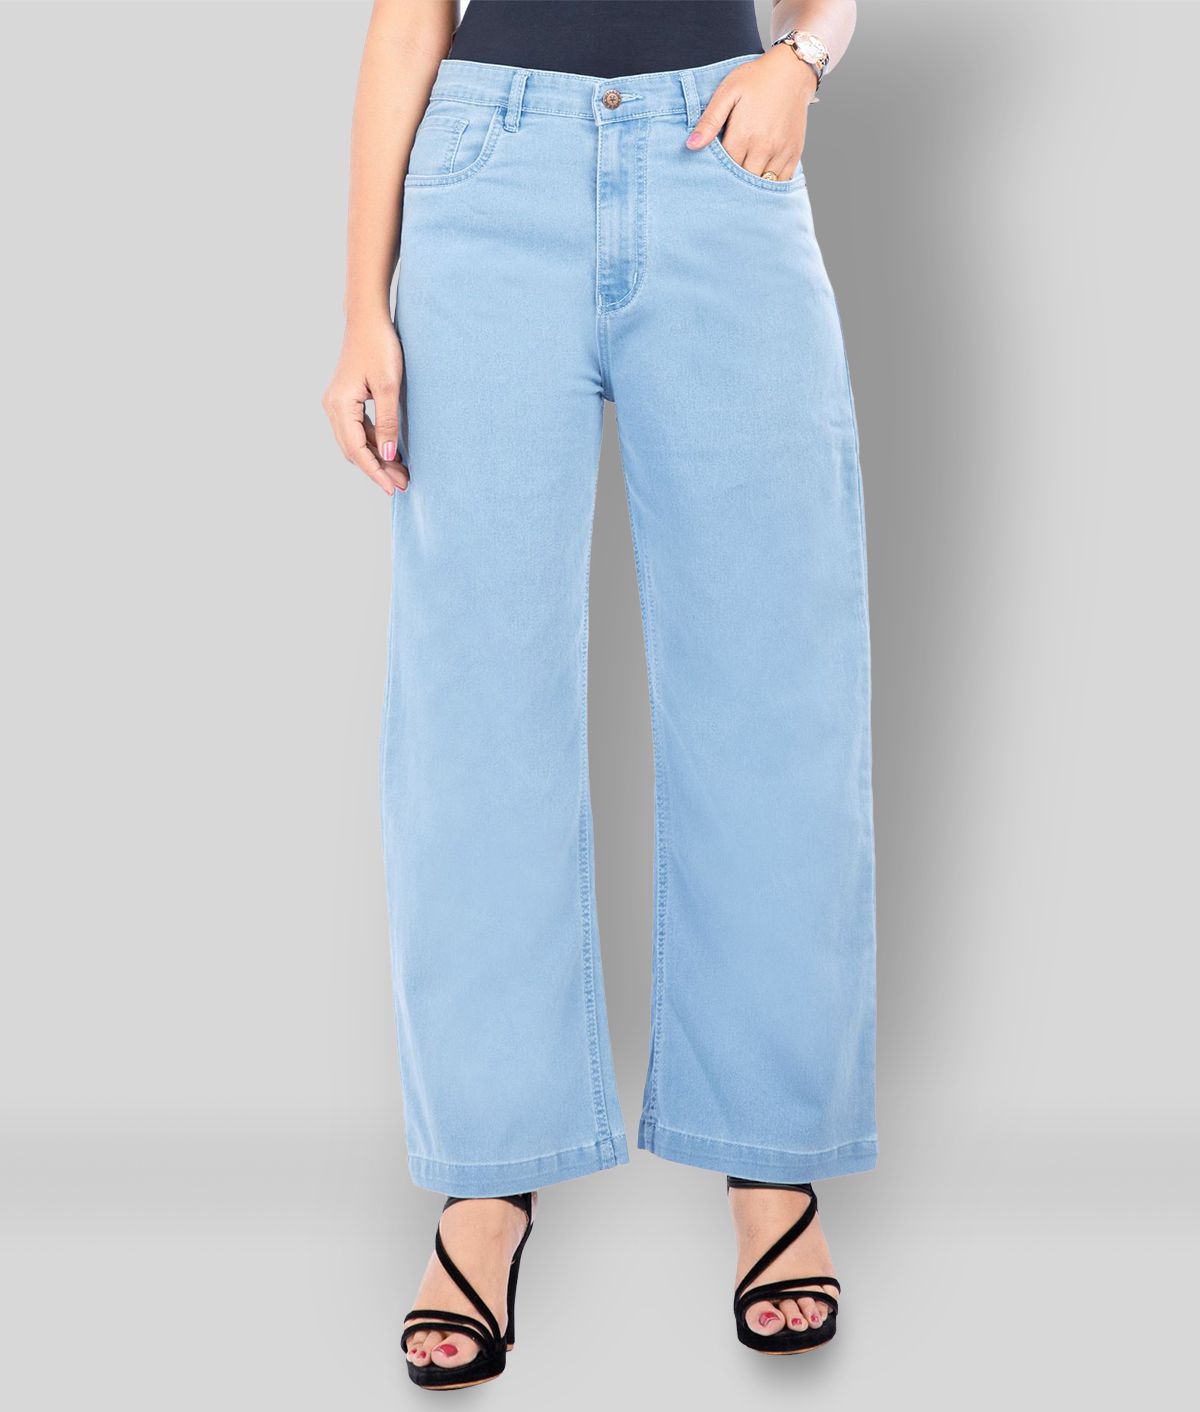 Rea-lize - Light Blue Cotton Women's Jeans ( Pack of 1 )